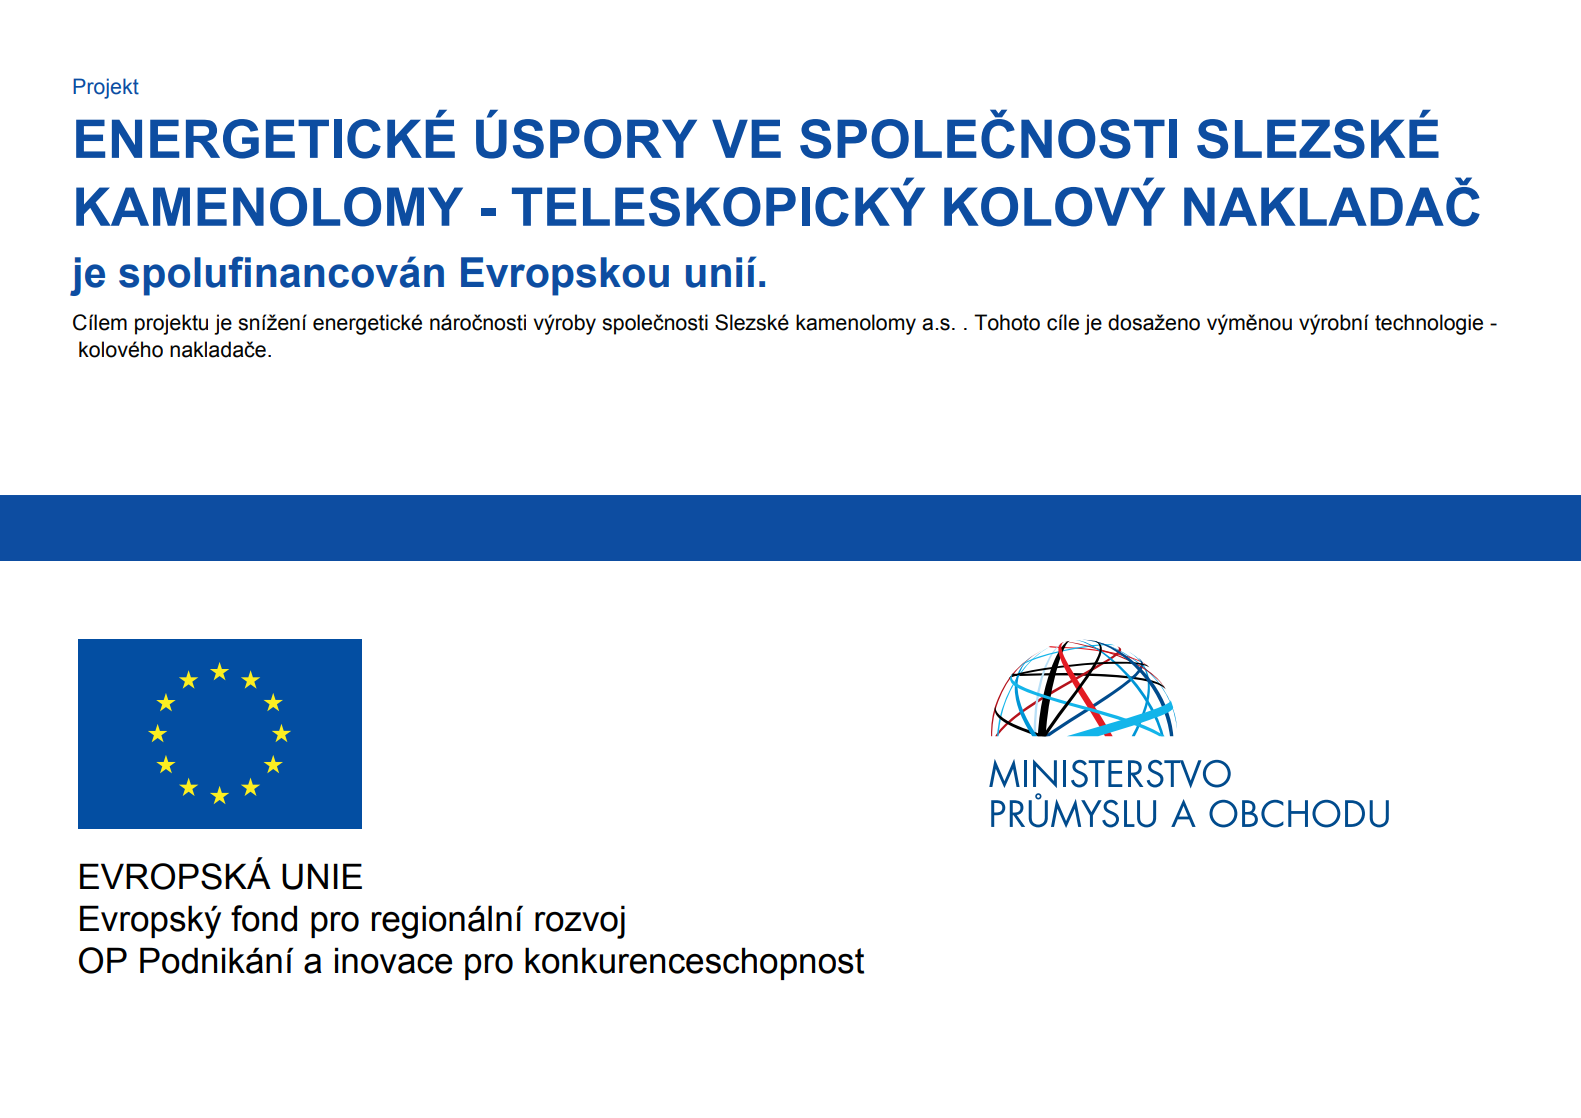 Energetické úspory ve společnosti slezské kamenolomy 'Teleskopický kolový nakladač' je spolufinancován Evropskou unií.